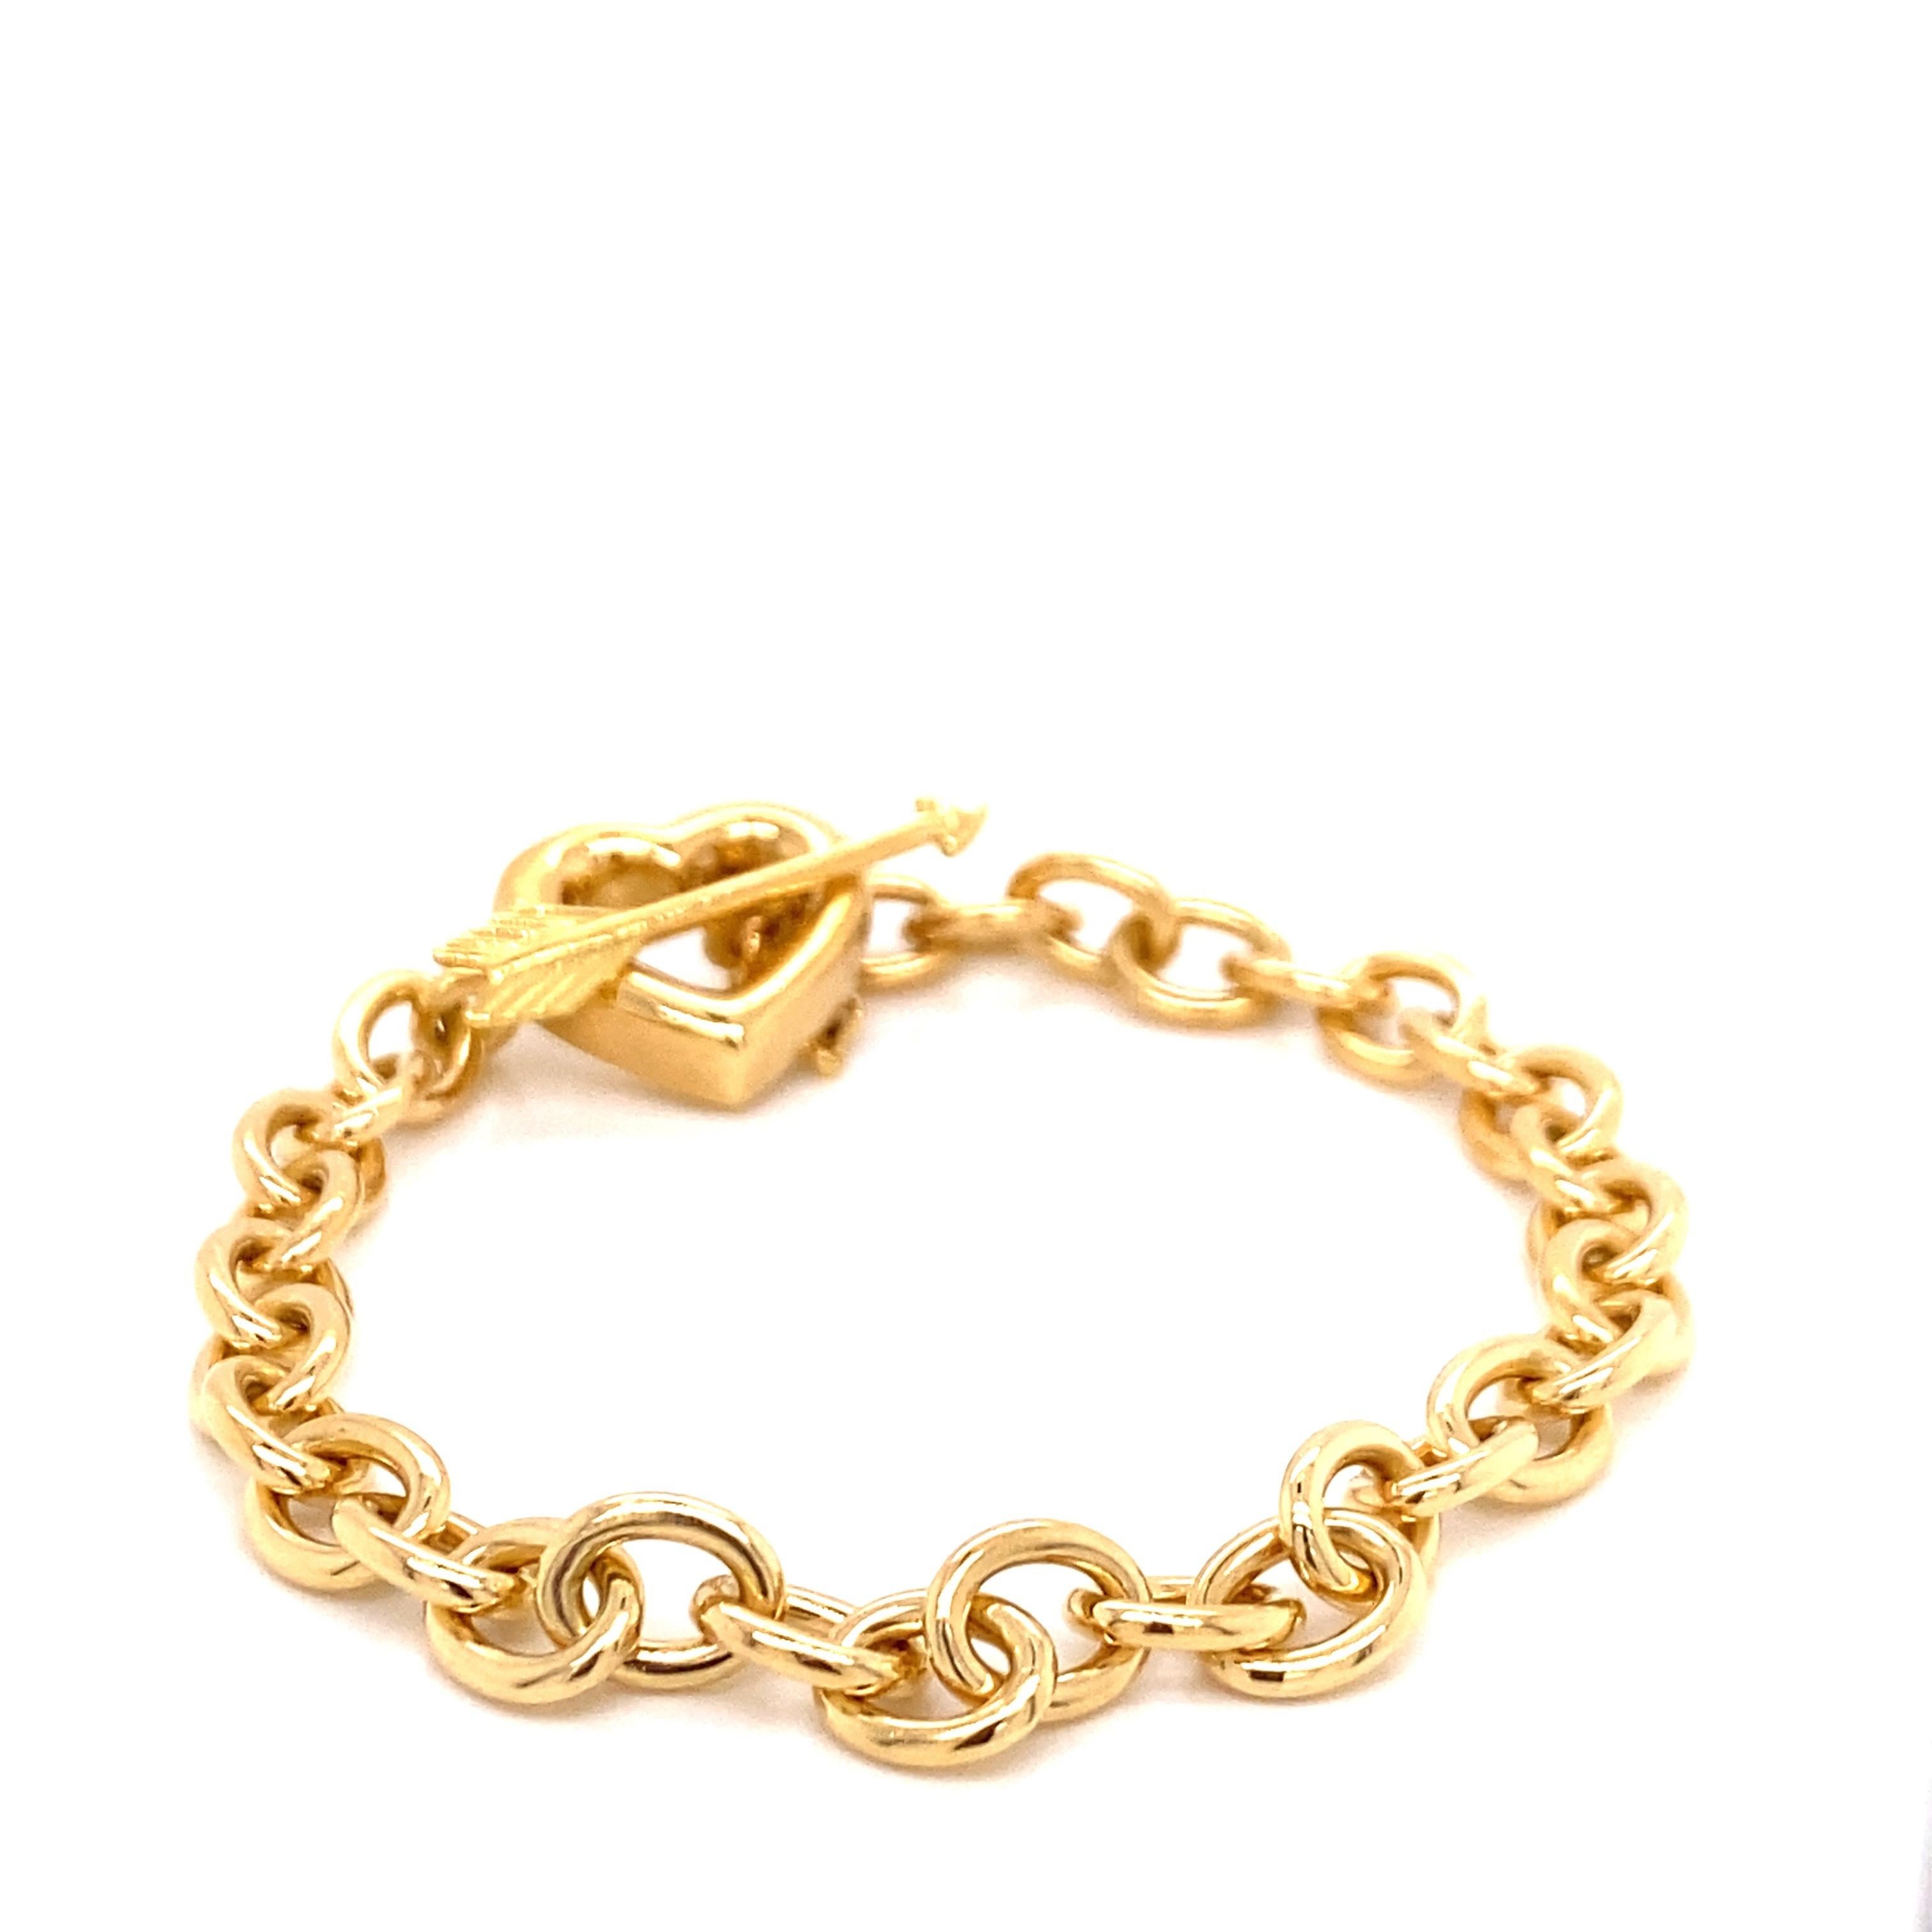 Tiffany's Vintage 1994 Bracelet Coeur et Flèche en or jaune 18K - Le bracelet mesure 7 pouces de long et 1/4 de pouce de large. Le bracelet pèse 27,2 grammes. Tiffany & Co et 1994 sont poinçonnés sur le fermoir.